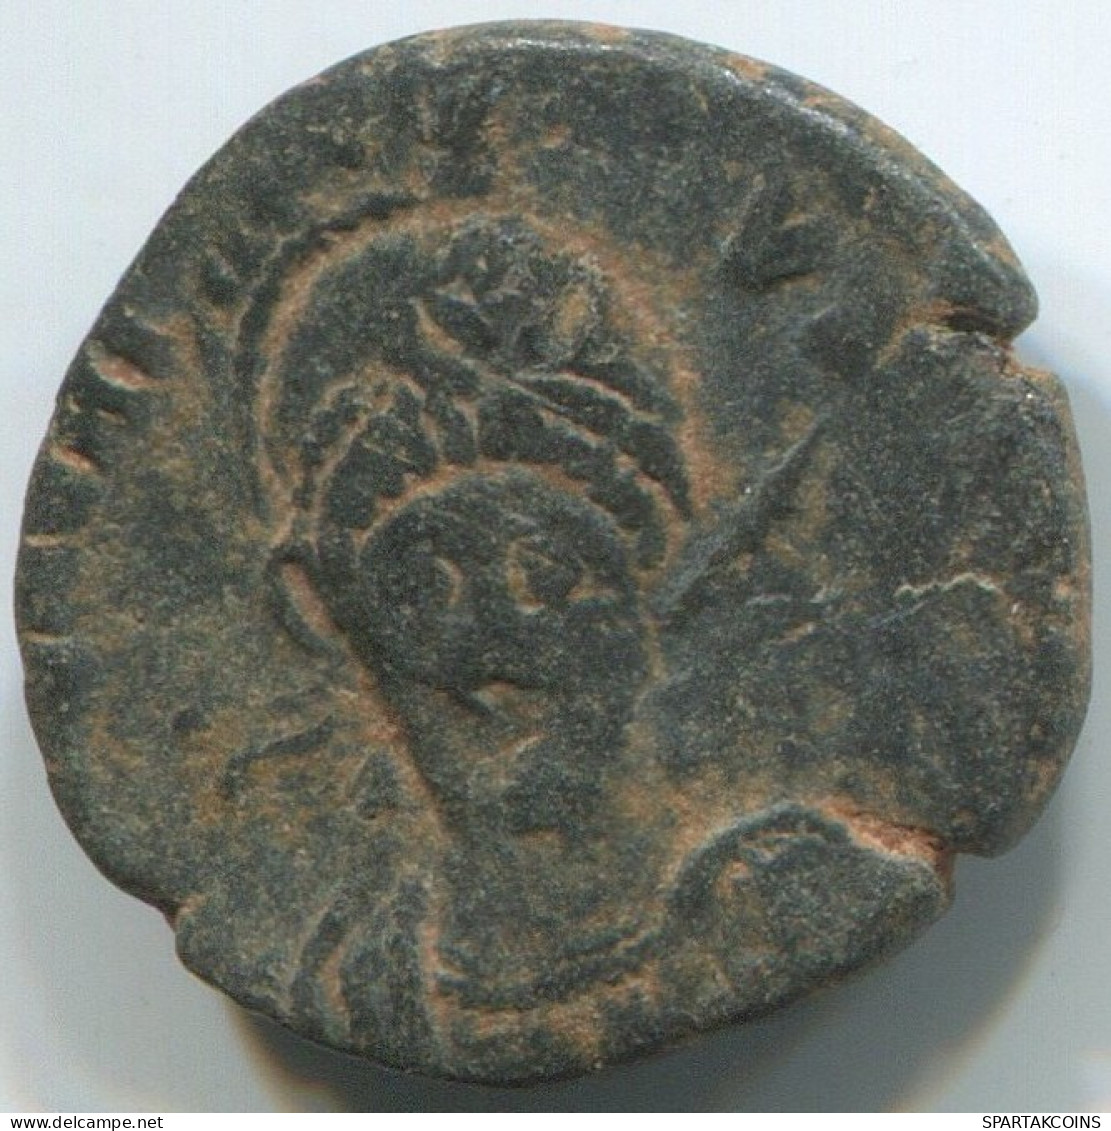 LATE ROMAN EMPIRE Coin Ancient Authentic Roman Coin 1.3g/14mm #ANT2444.14.U.A - La Fin De L'Empire (363-476)